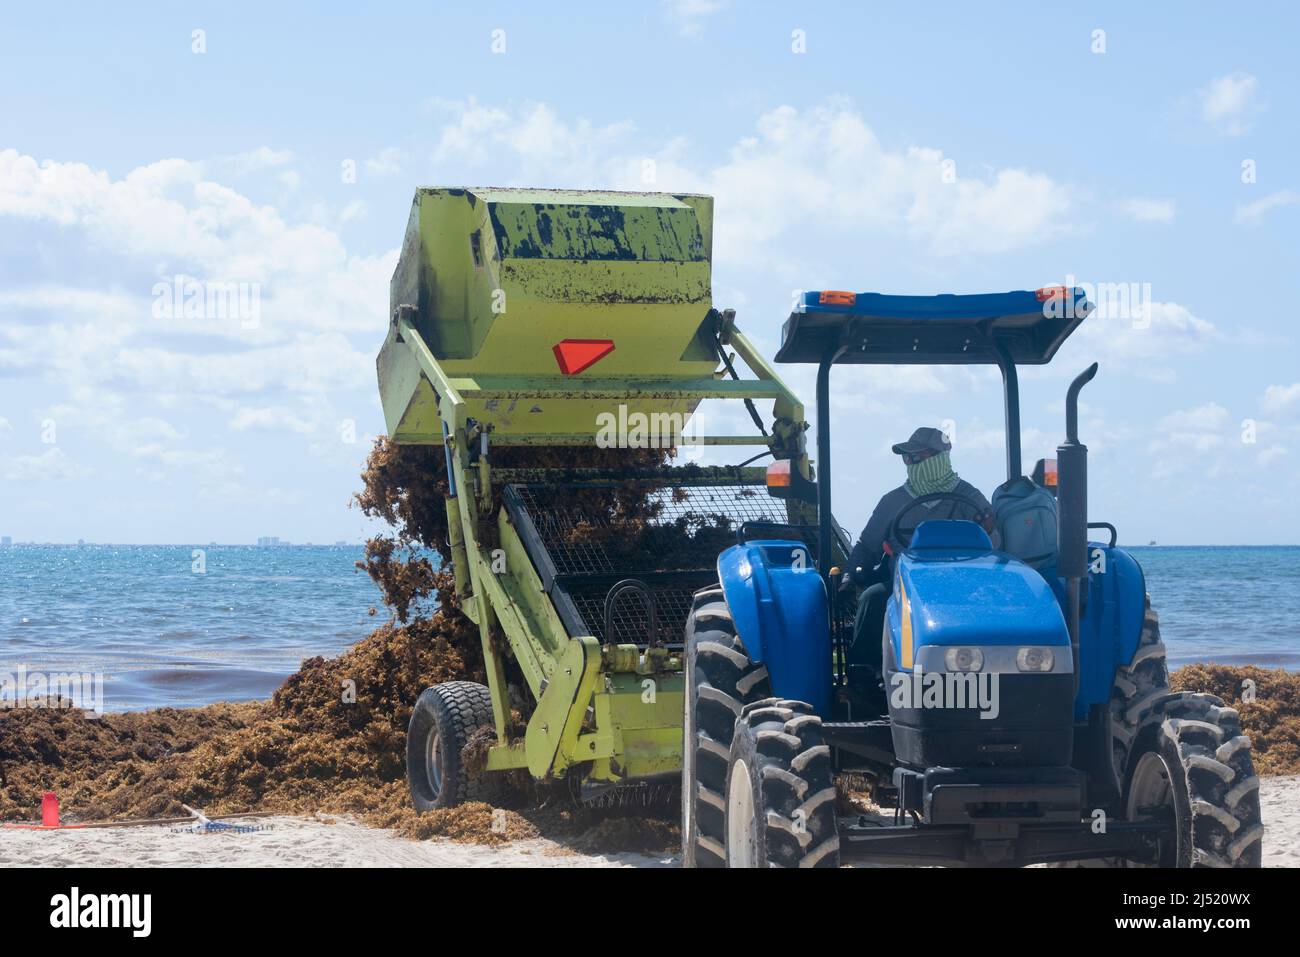 Macchinari pesanti rimuove Sargasso dalla spiaggia di Playa del Carmen, Messico Foto Stock